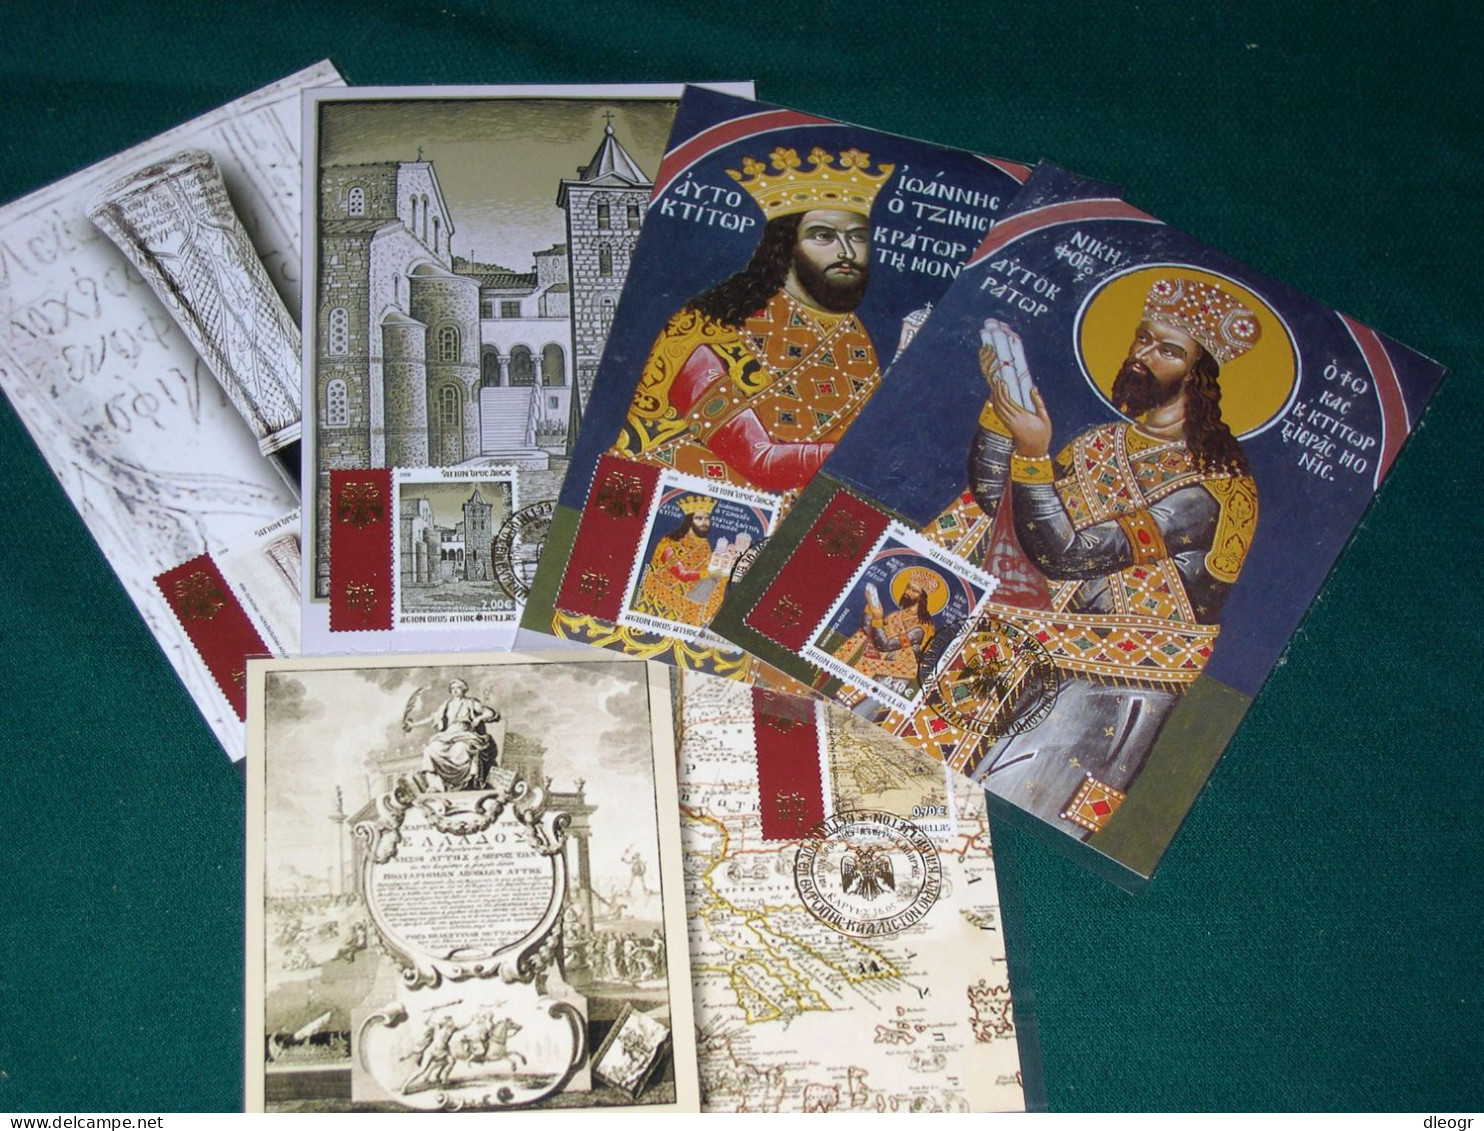 Greece Mount Athos 2008 Historical Beginning Issue Maximum Card Set XF. - Cartes-maximum (CM)